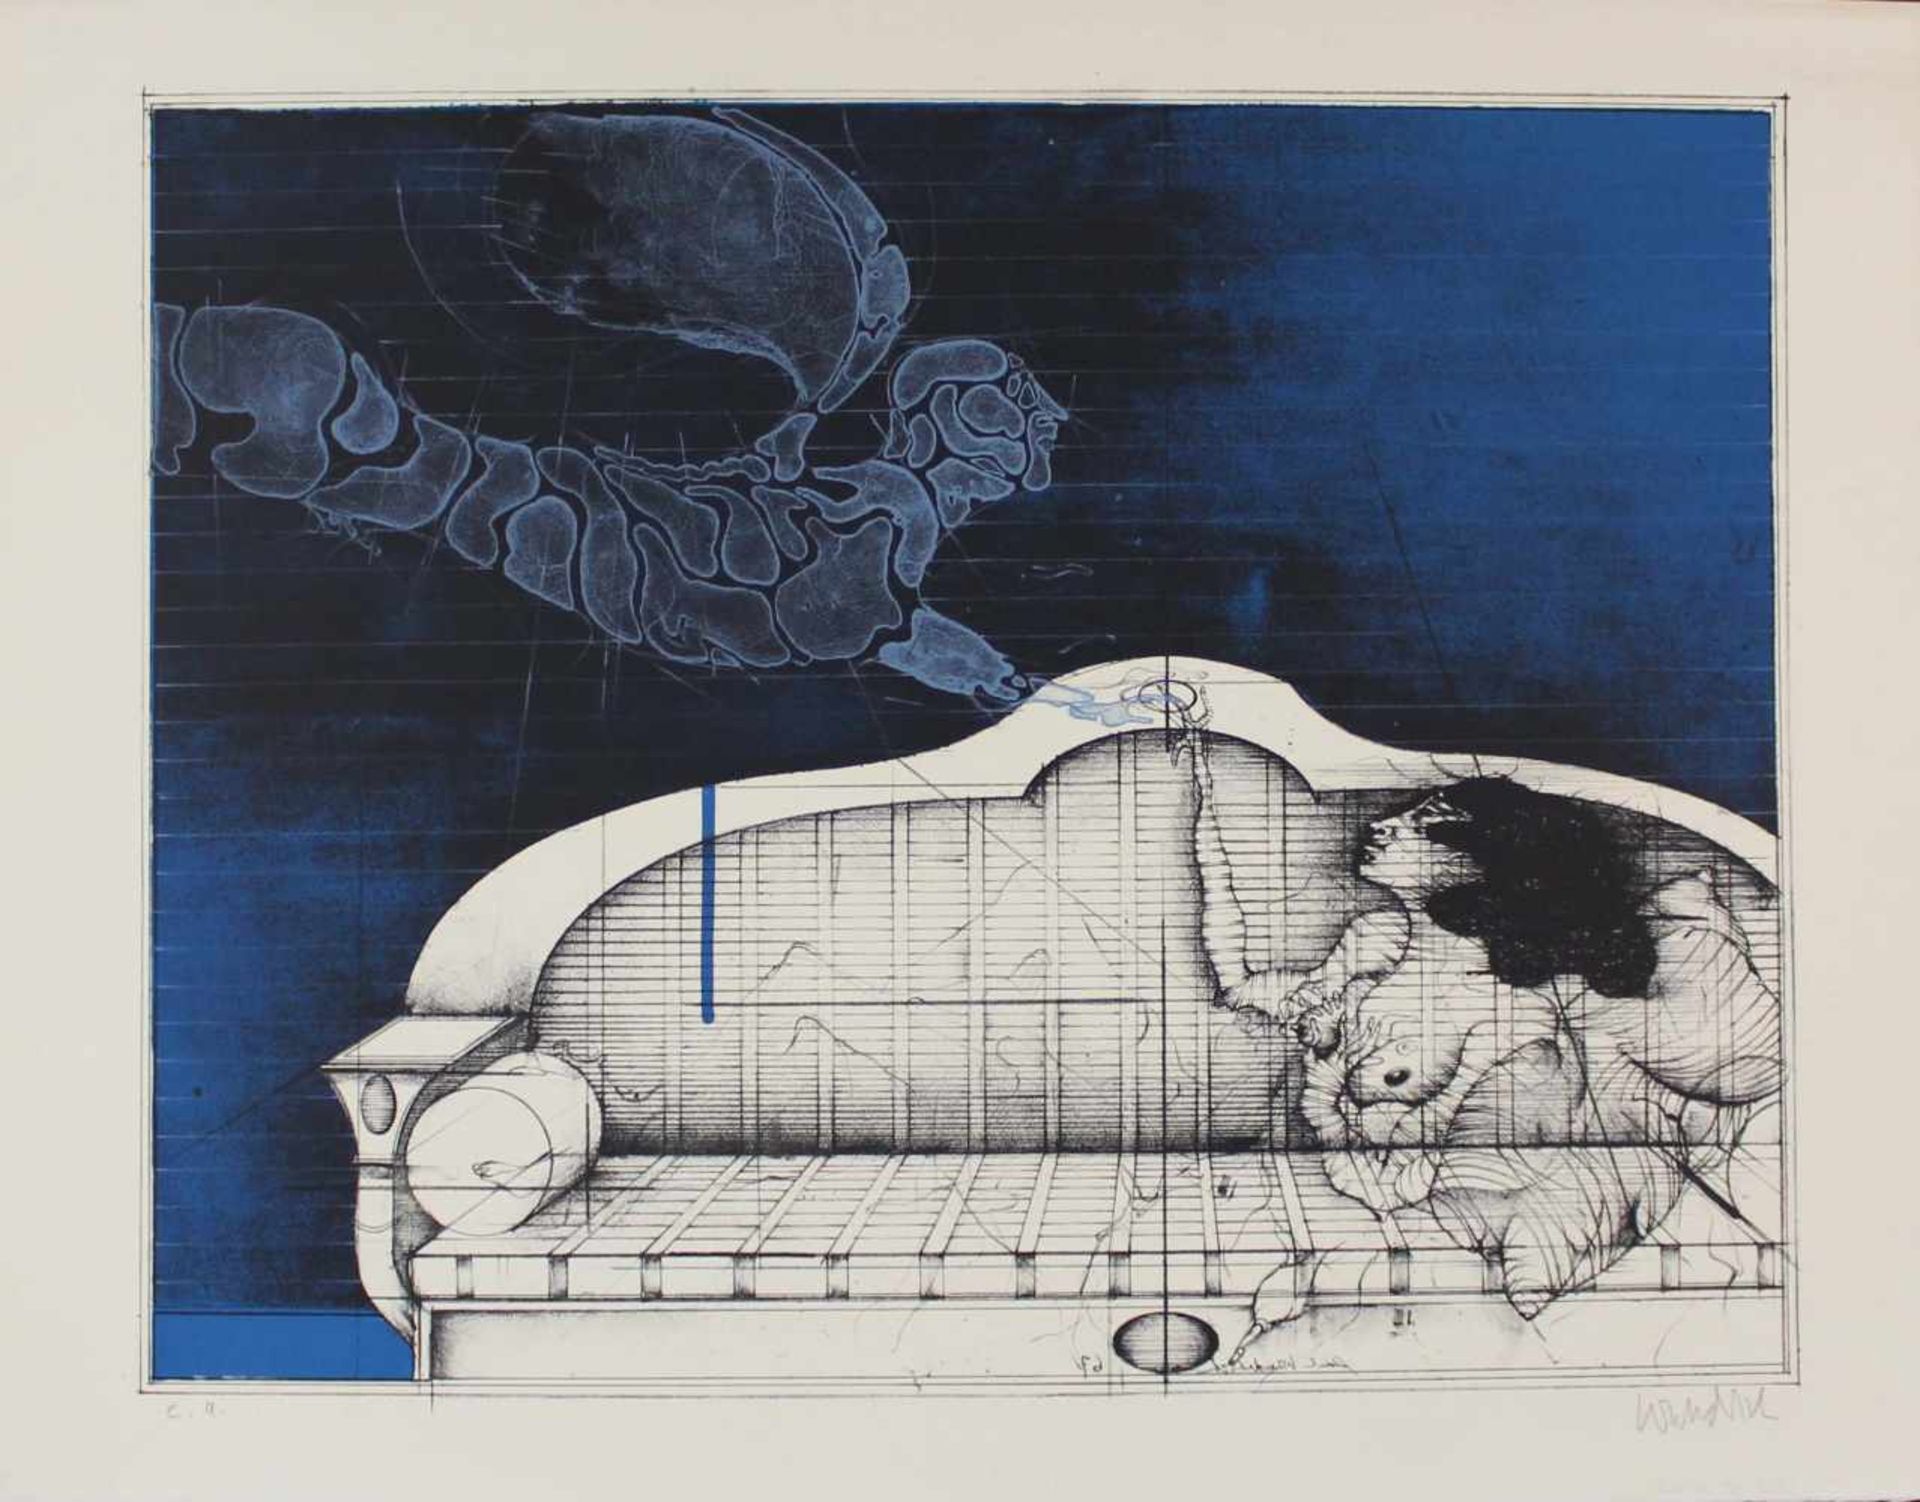 Paul WUNDERLICH (1927 - 2010). "Der Blaue Engel" (The Blue Angel)432 mm x 550 mm die Abbildung.